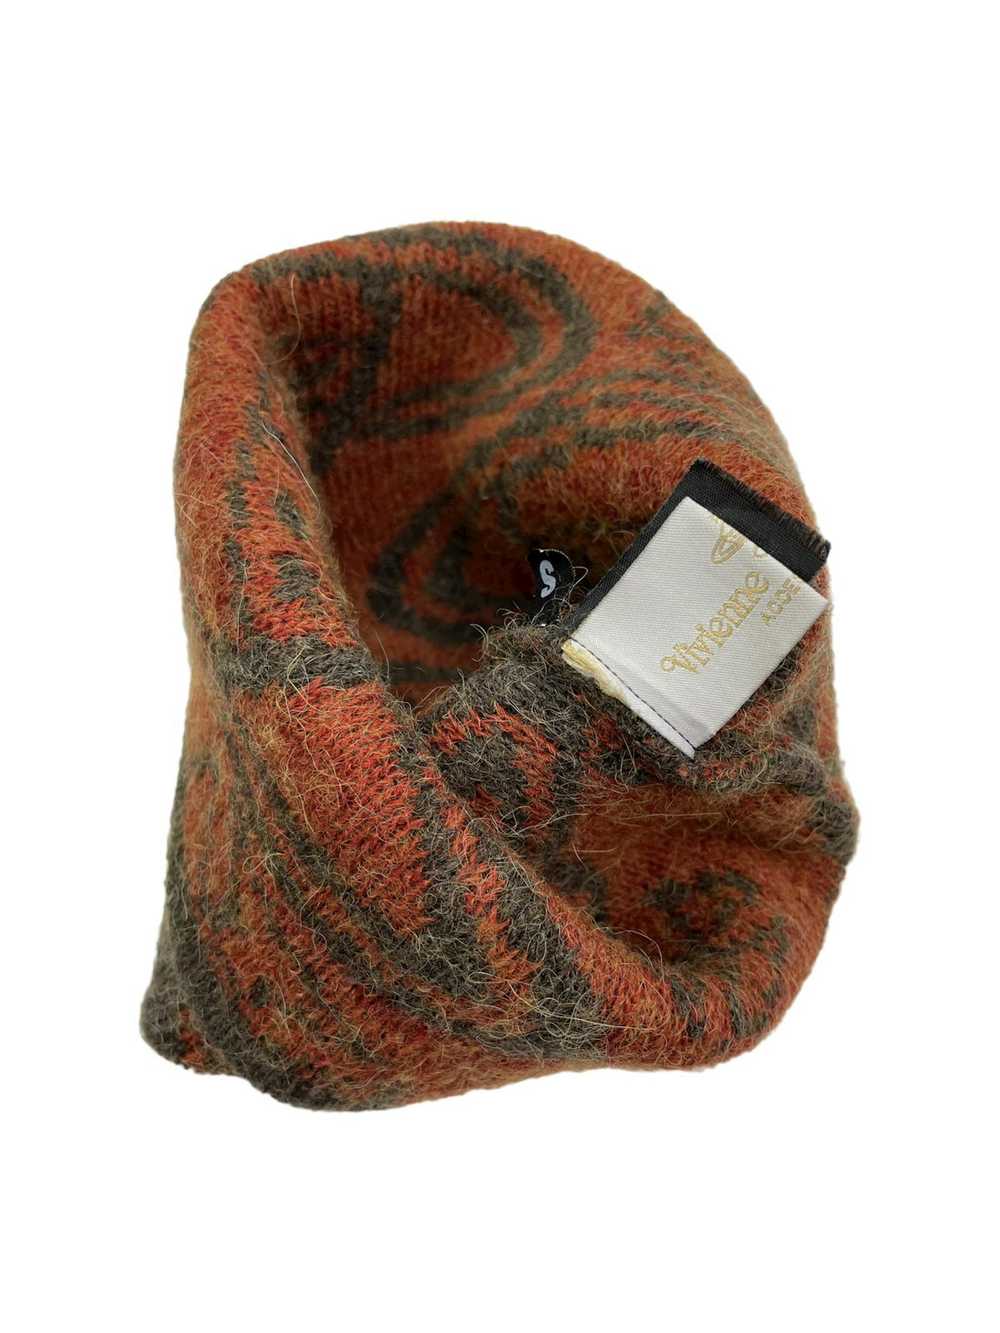 Vivienne Westwood Wool & Alpaca Knit Orb Beanie - image 5